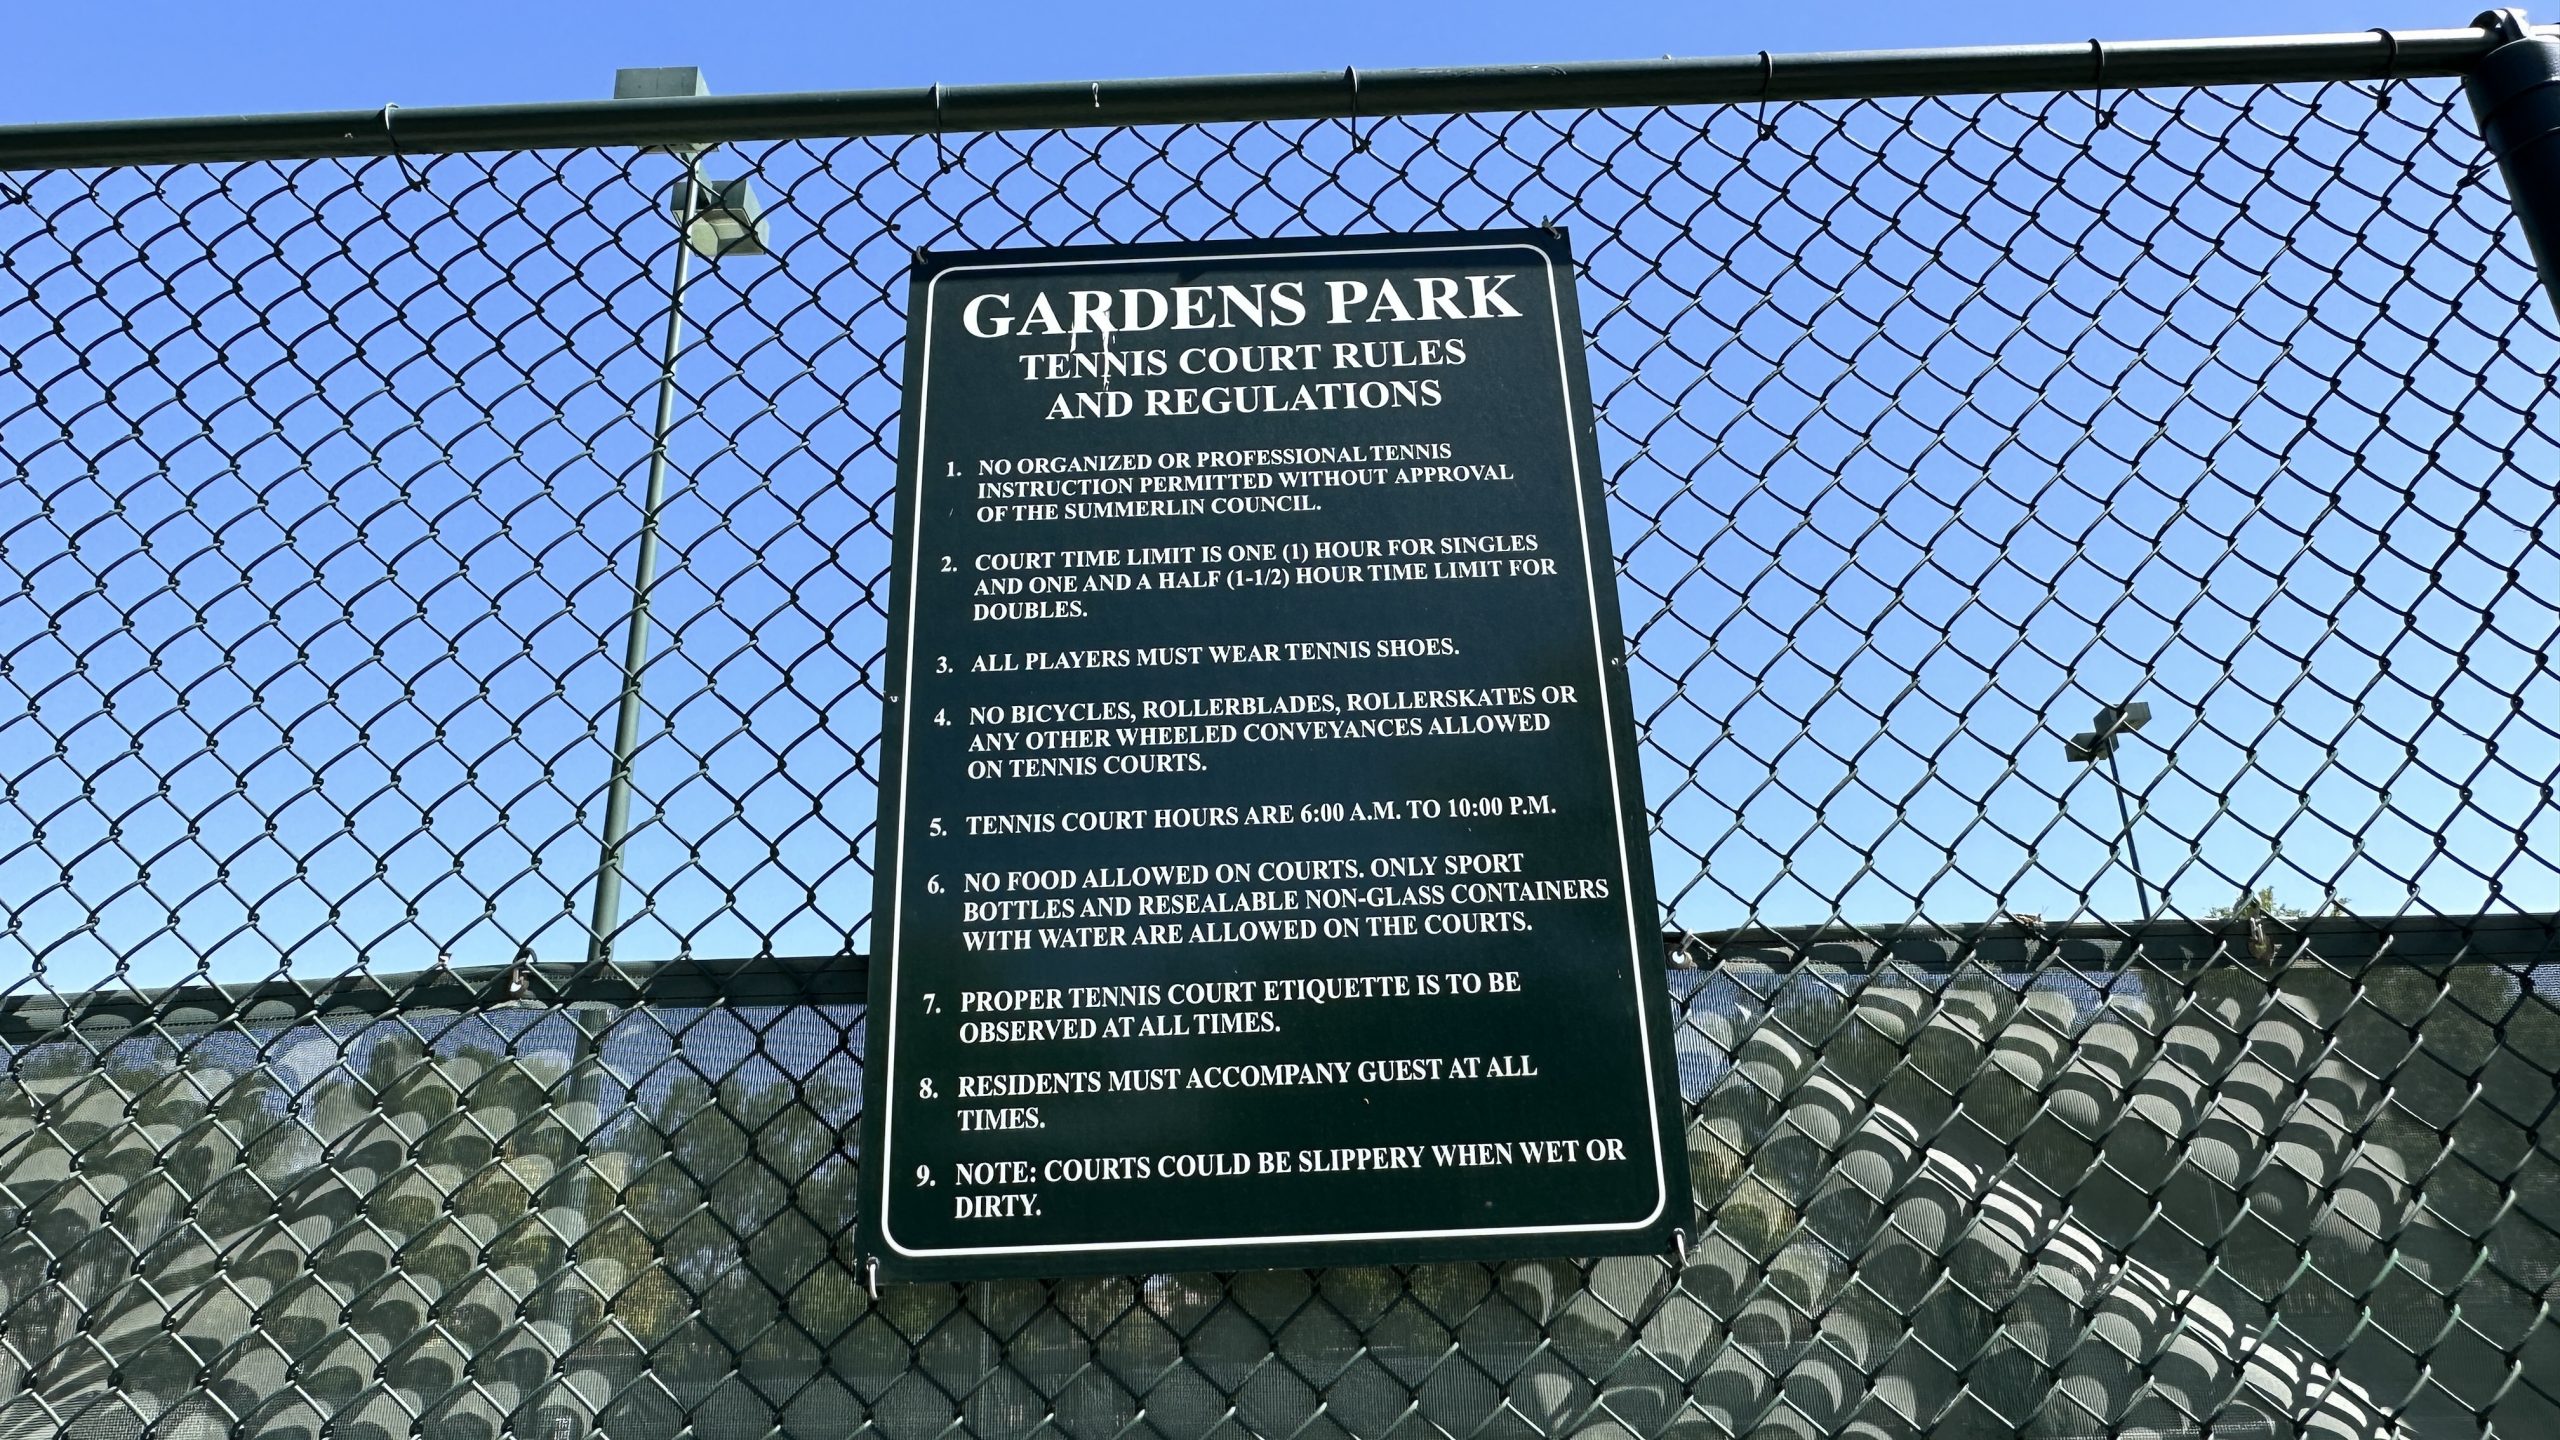 The Gardens Park